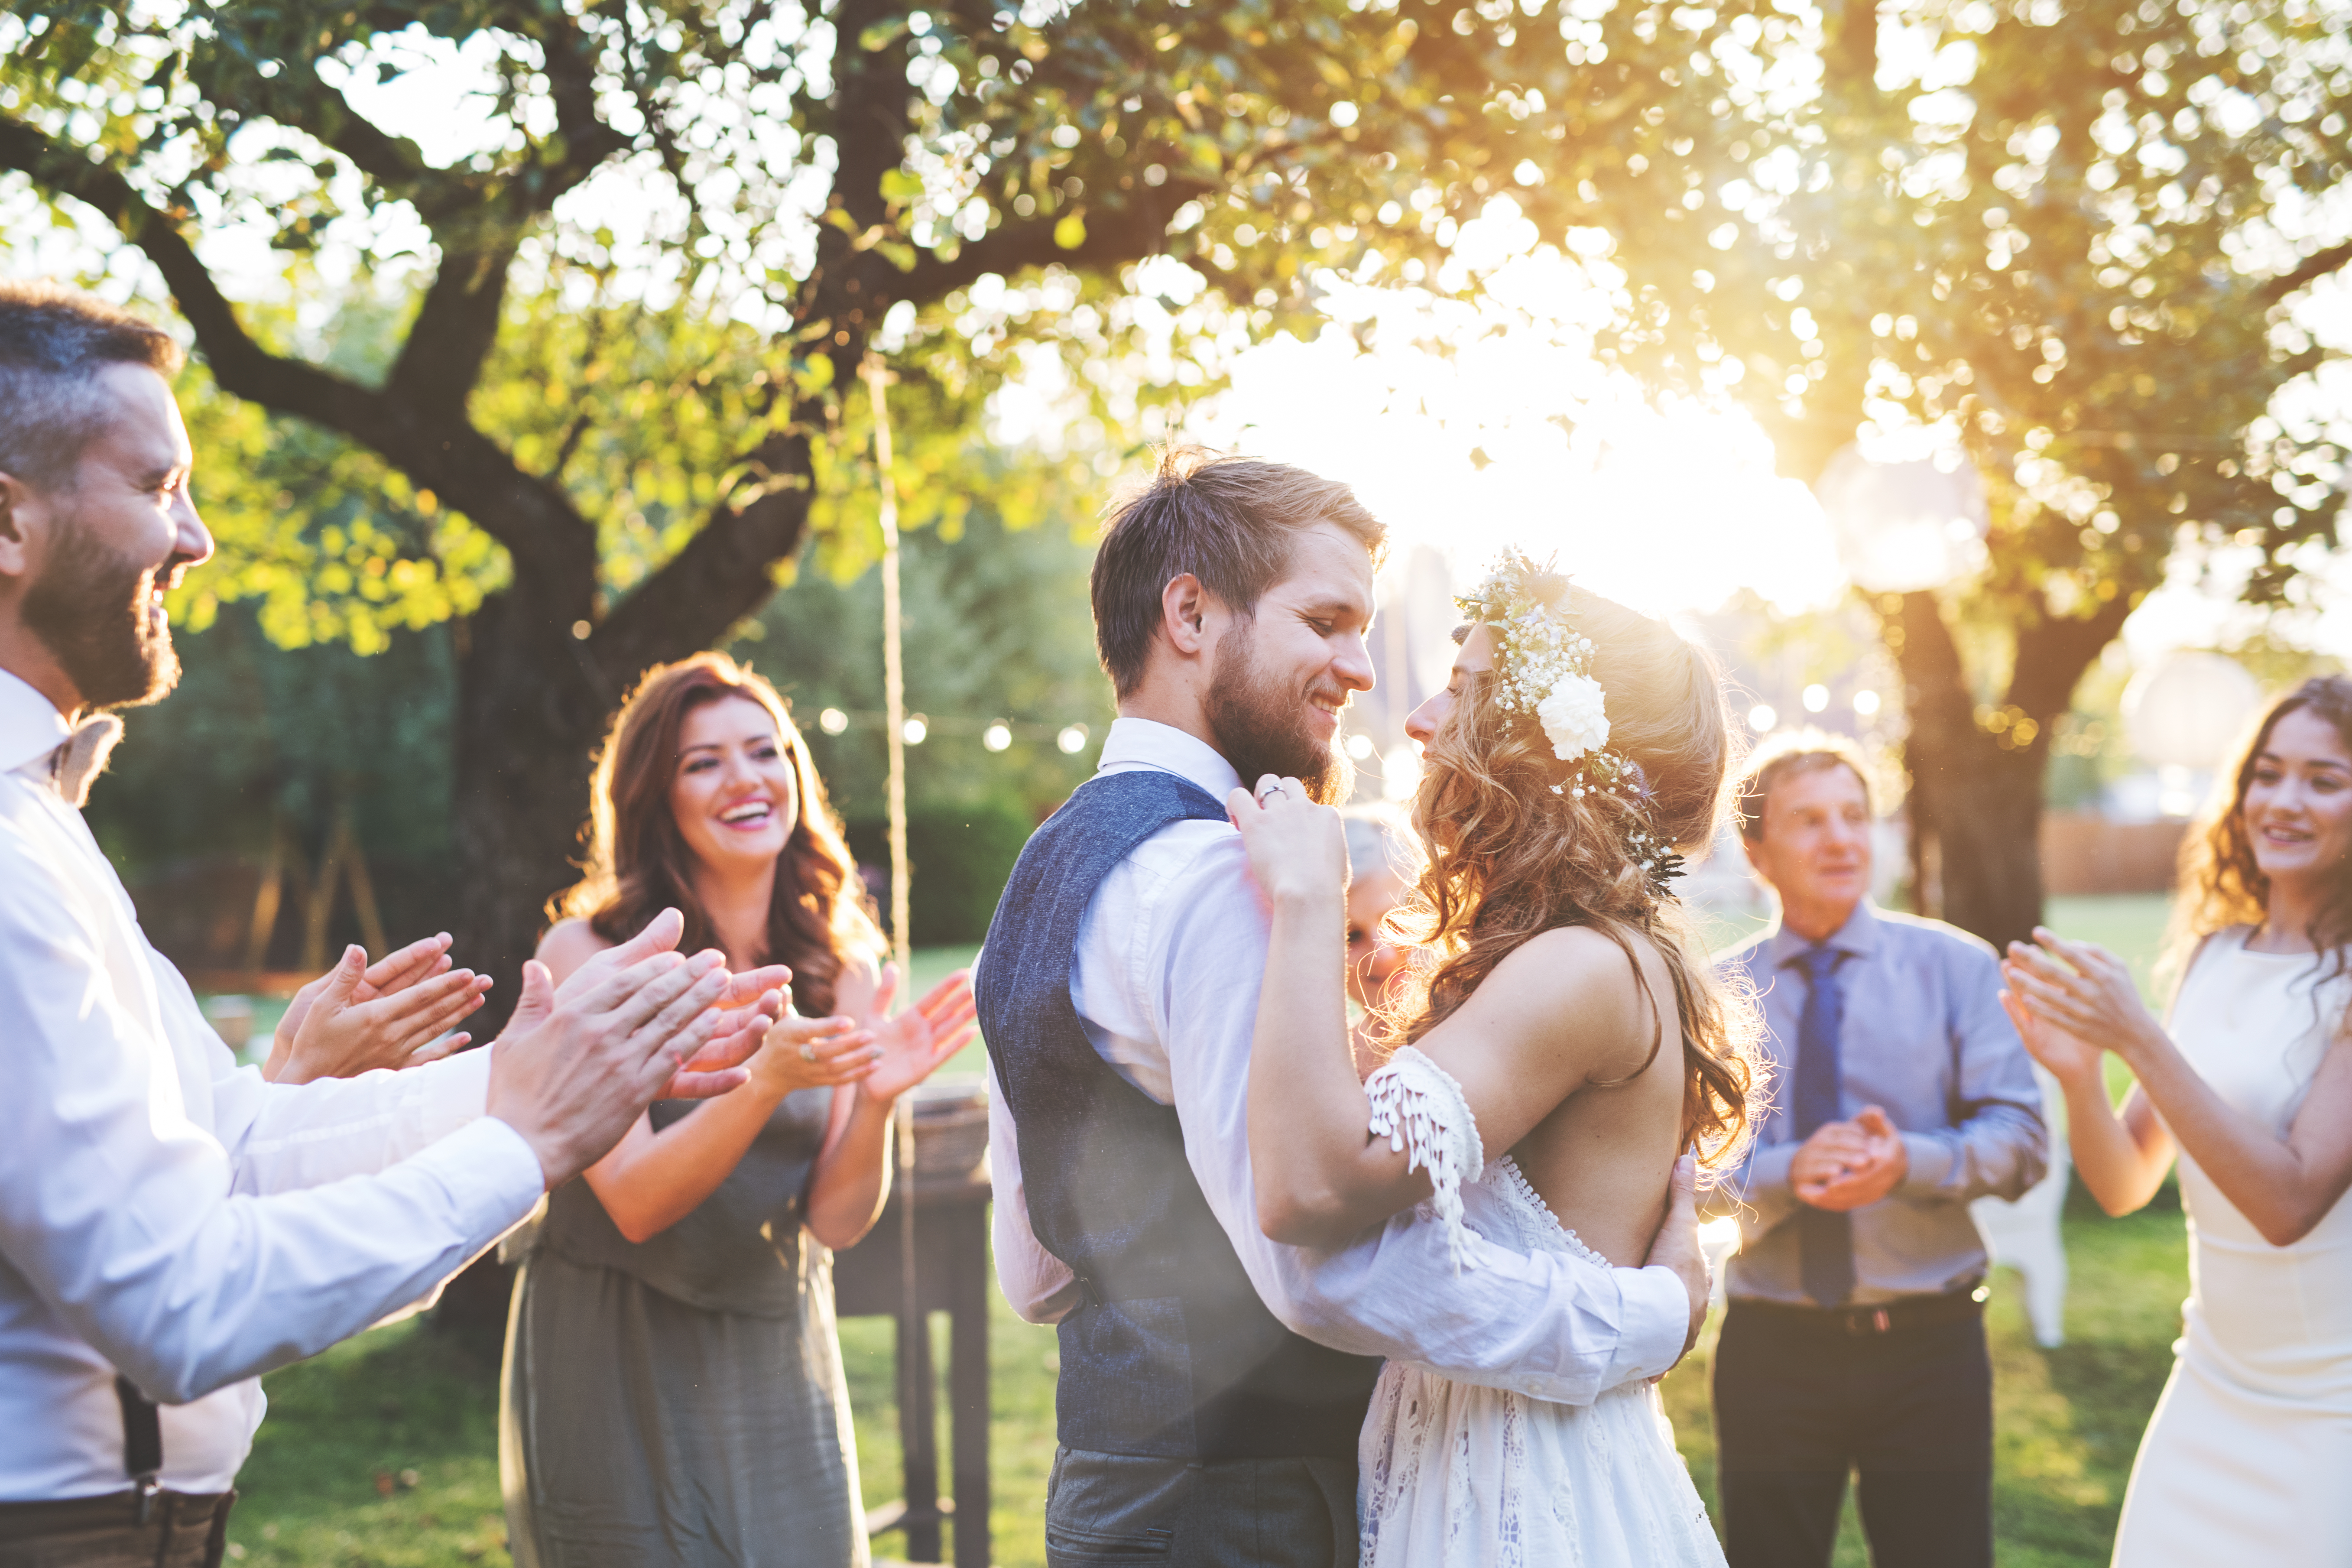 La mariée et le marié dansent lors de leur mariage | Source : Shutterstock